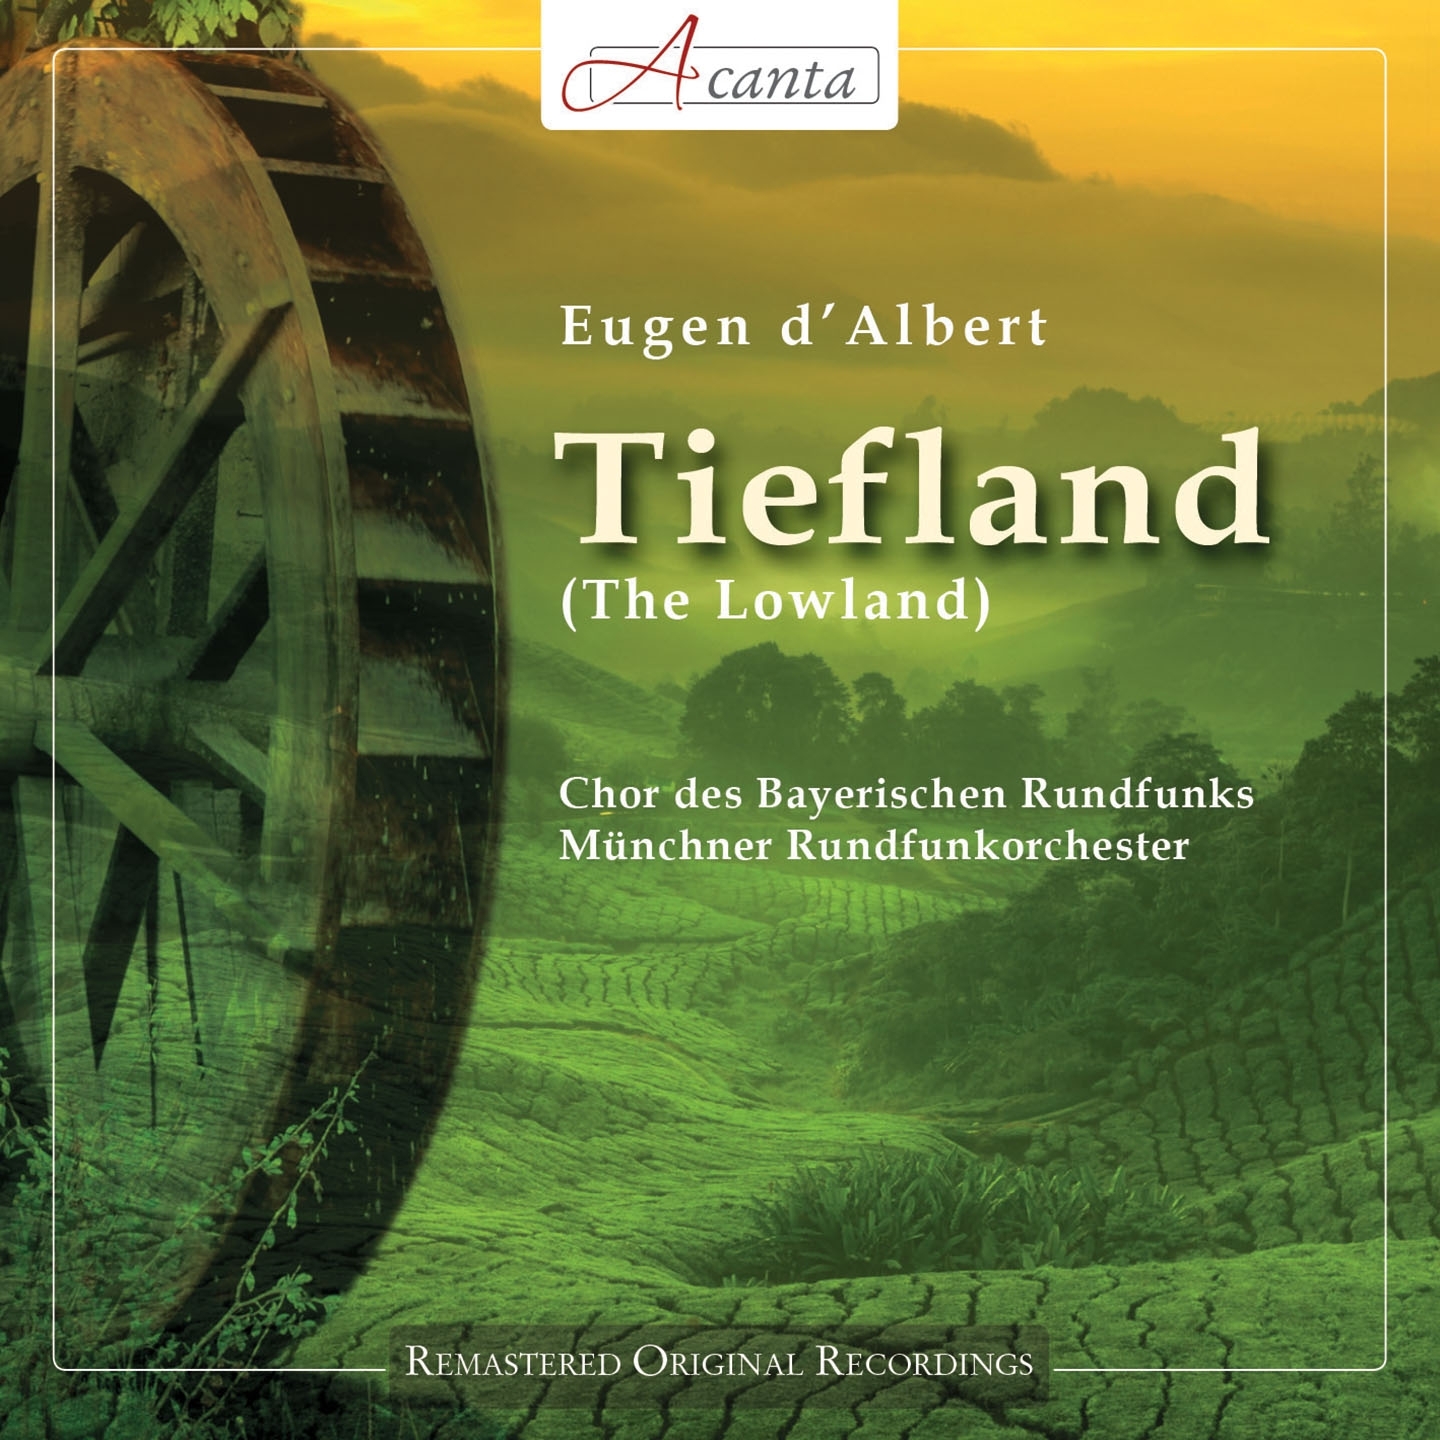 Tiefland, Act II, Scene 4: "Ballade der Nuri: Der heilige Michael"